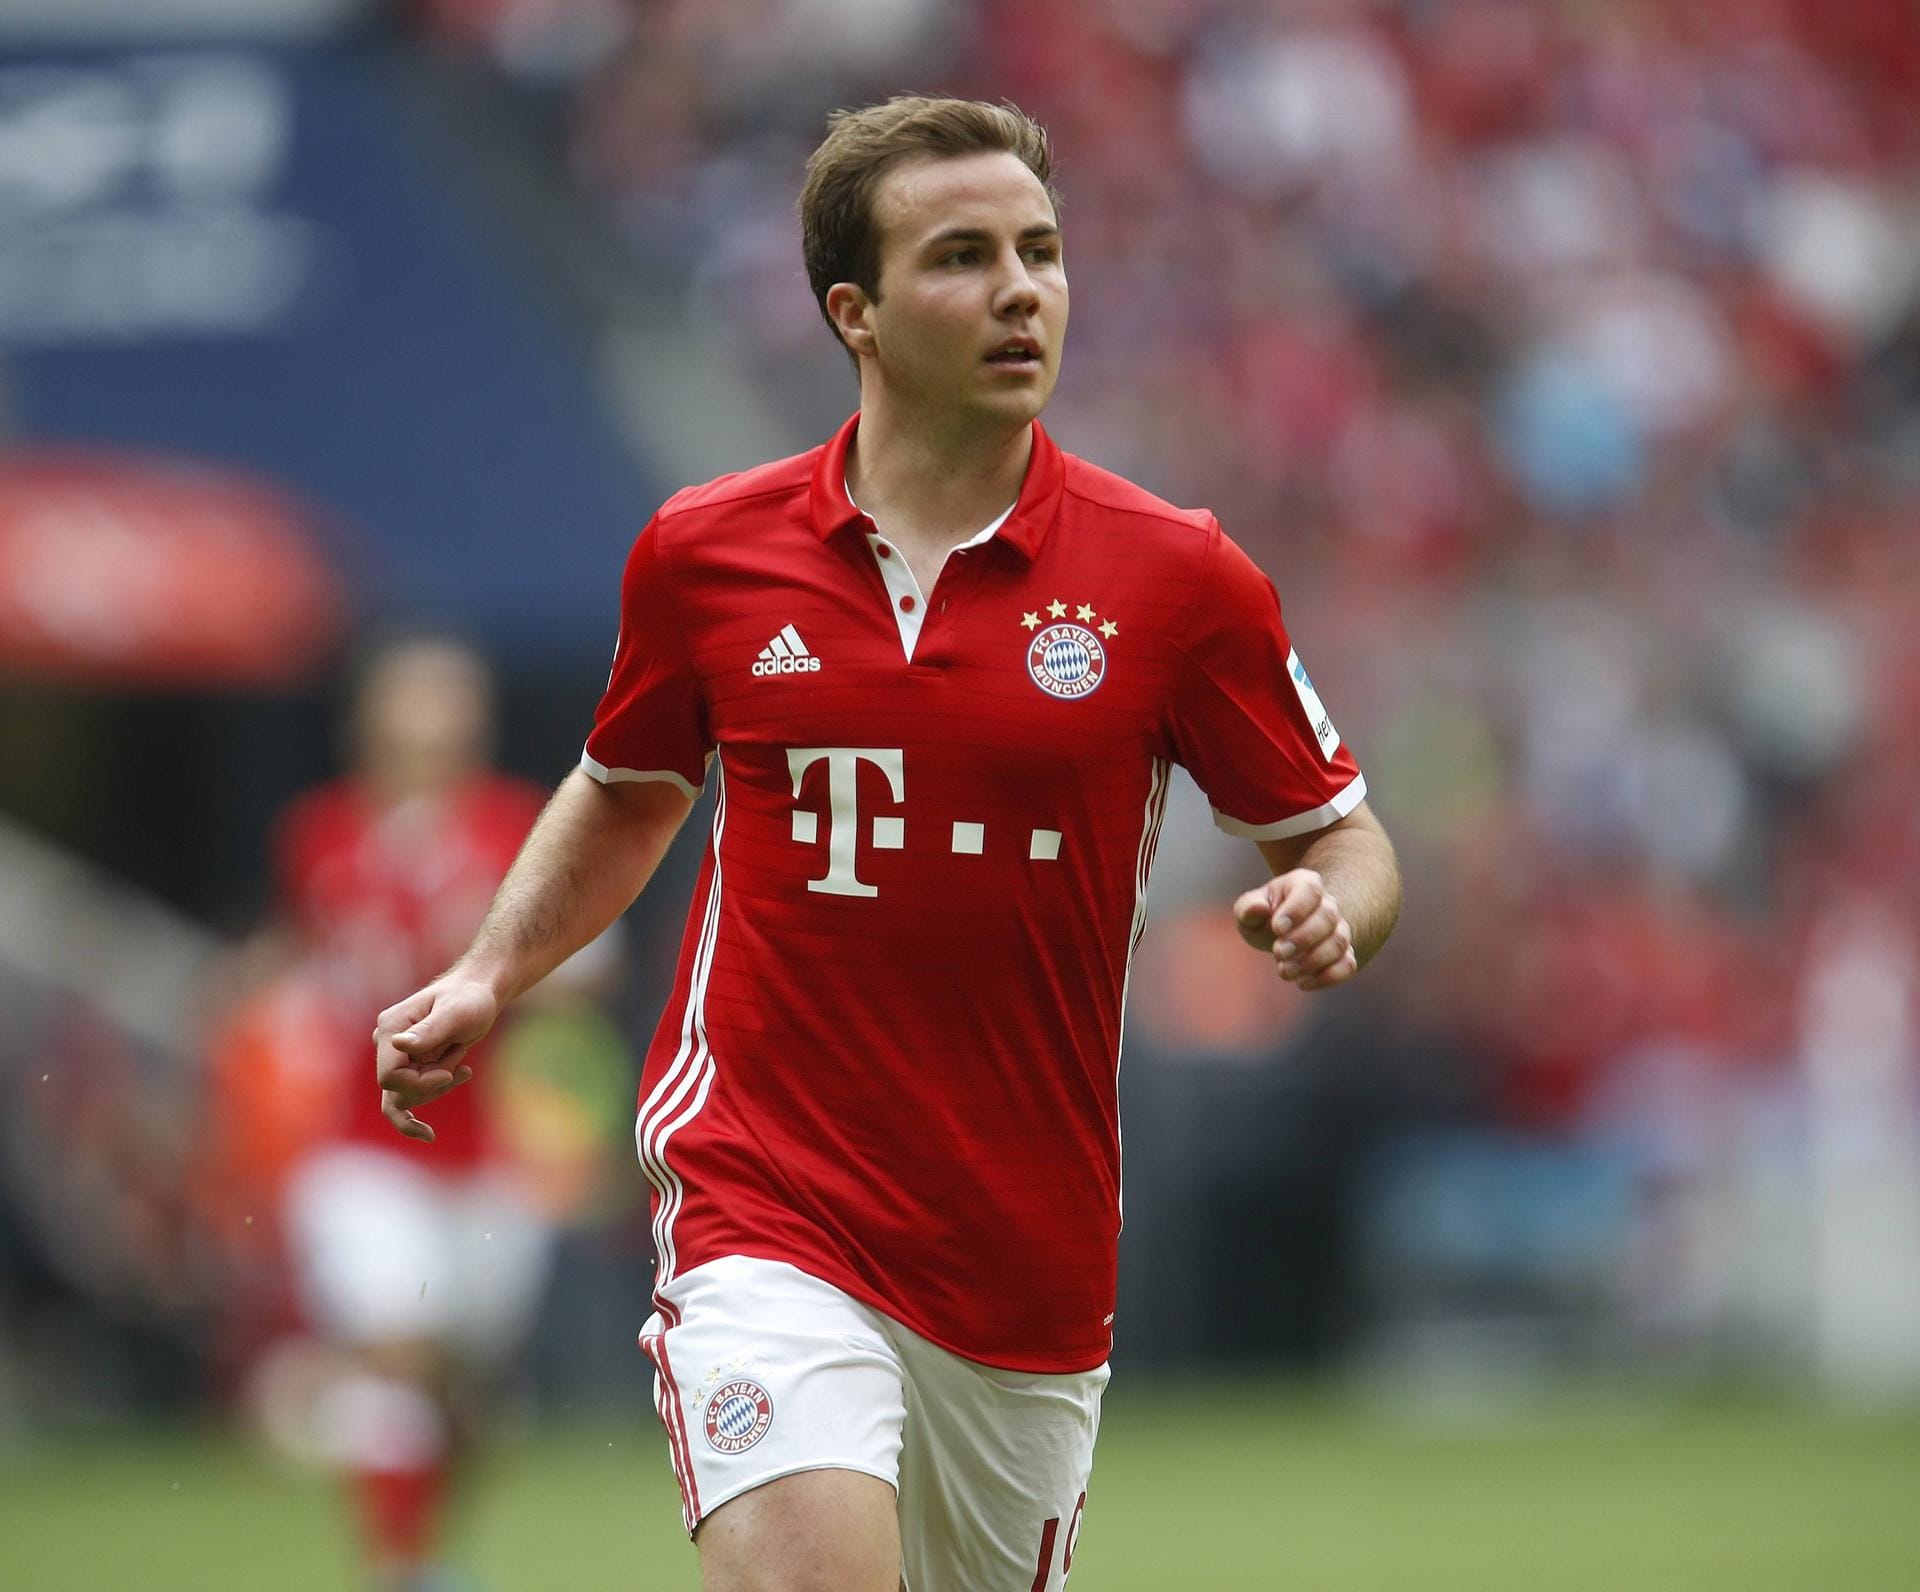 Platz 5 – Mario Götze: Der WM-Siegtorschütze von 2014 wechselte 2013 von Borussia Dortmund zum FC Bayern München. Ablösesumme: 37 Millionen Euro. Drei Jahre später kehrte er für 22 Mio. zum BVB zurück.